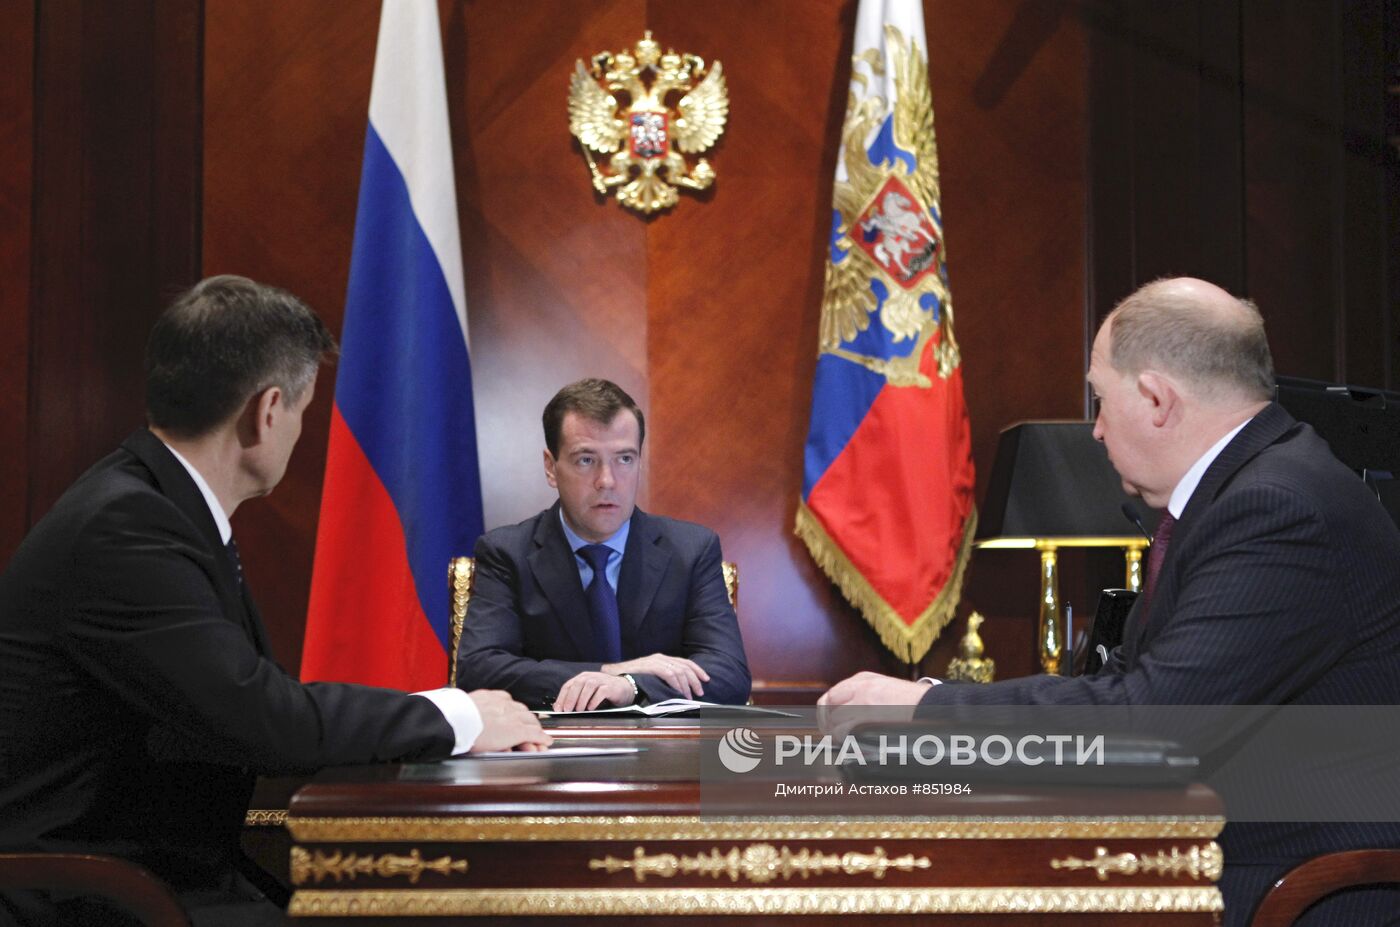 Д.Медведев назначил В.Кирьянова на должность замминистра МВД РФ